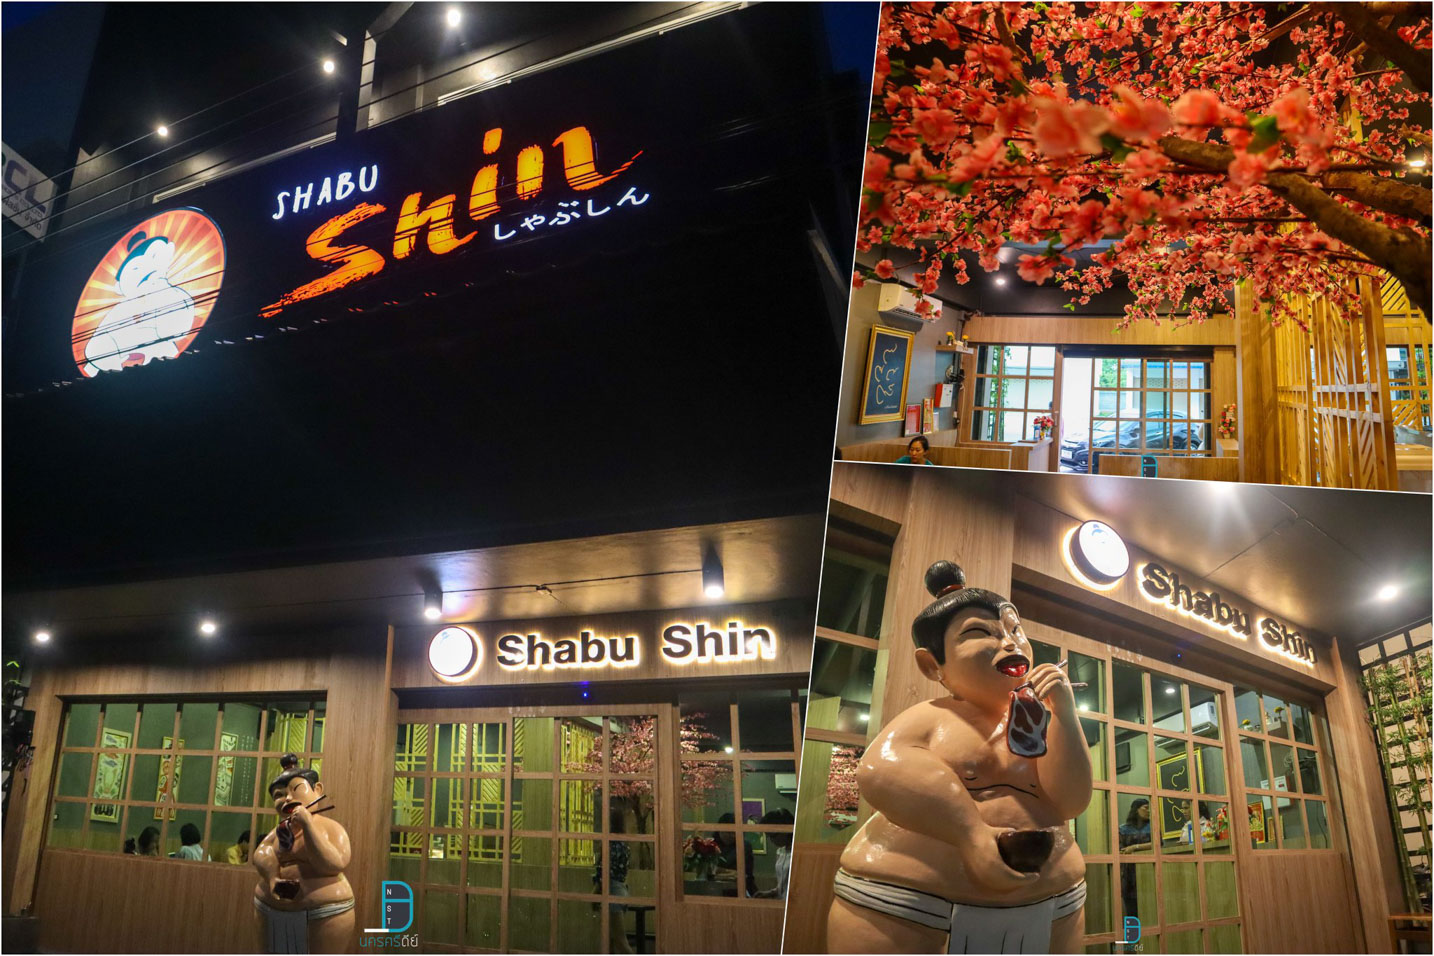  11.-ร้าน-Shabu-Shin-แสงสีสวยร้านสวยเช่นกันครับ-ชาบูเด็ดๆร้อนๆฟินๆ-รีวิวตัวเต็ม-รายละเอียด-คลิก
 แหล่งท่องเที่ยว,นครศรี,จุดเช็คอิน,จุดถ่ายรูป,คาเฟ่,ของกิน,จุดกิน